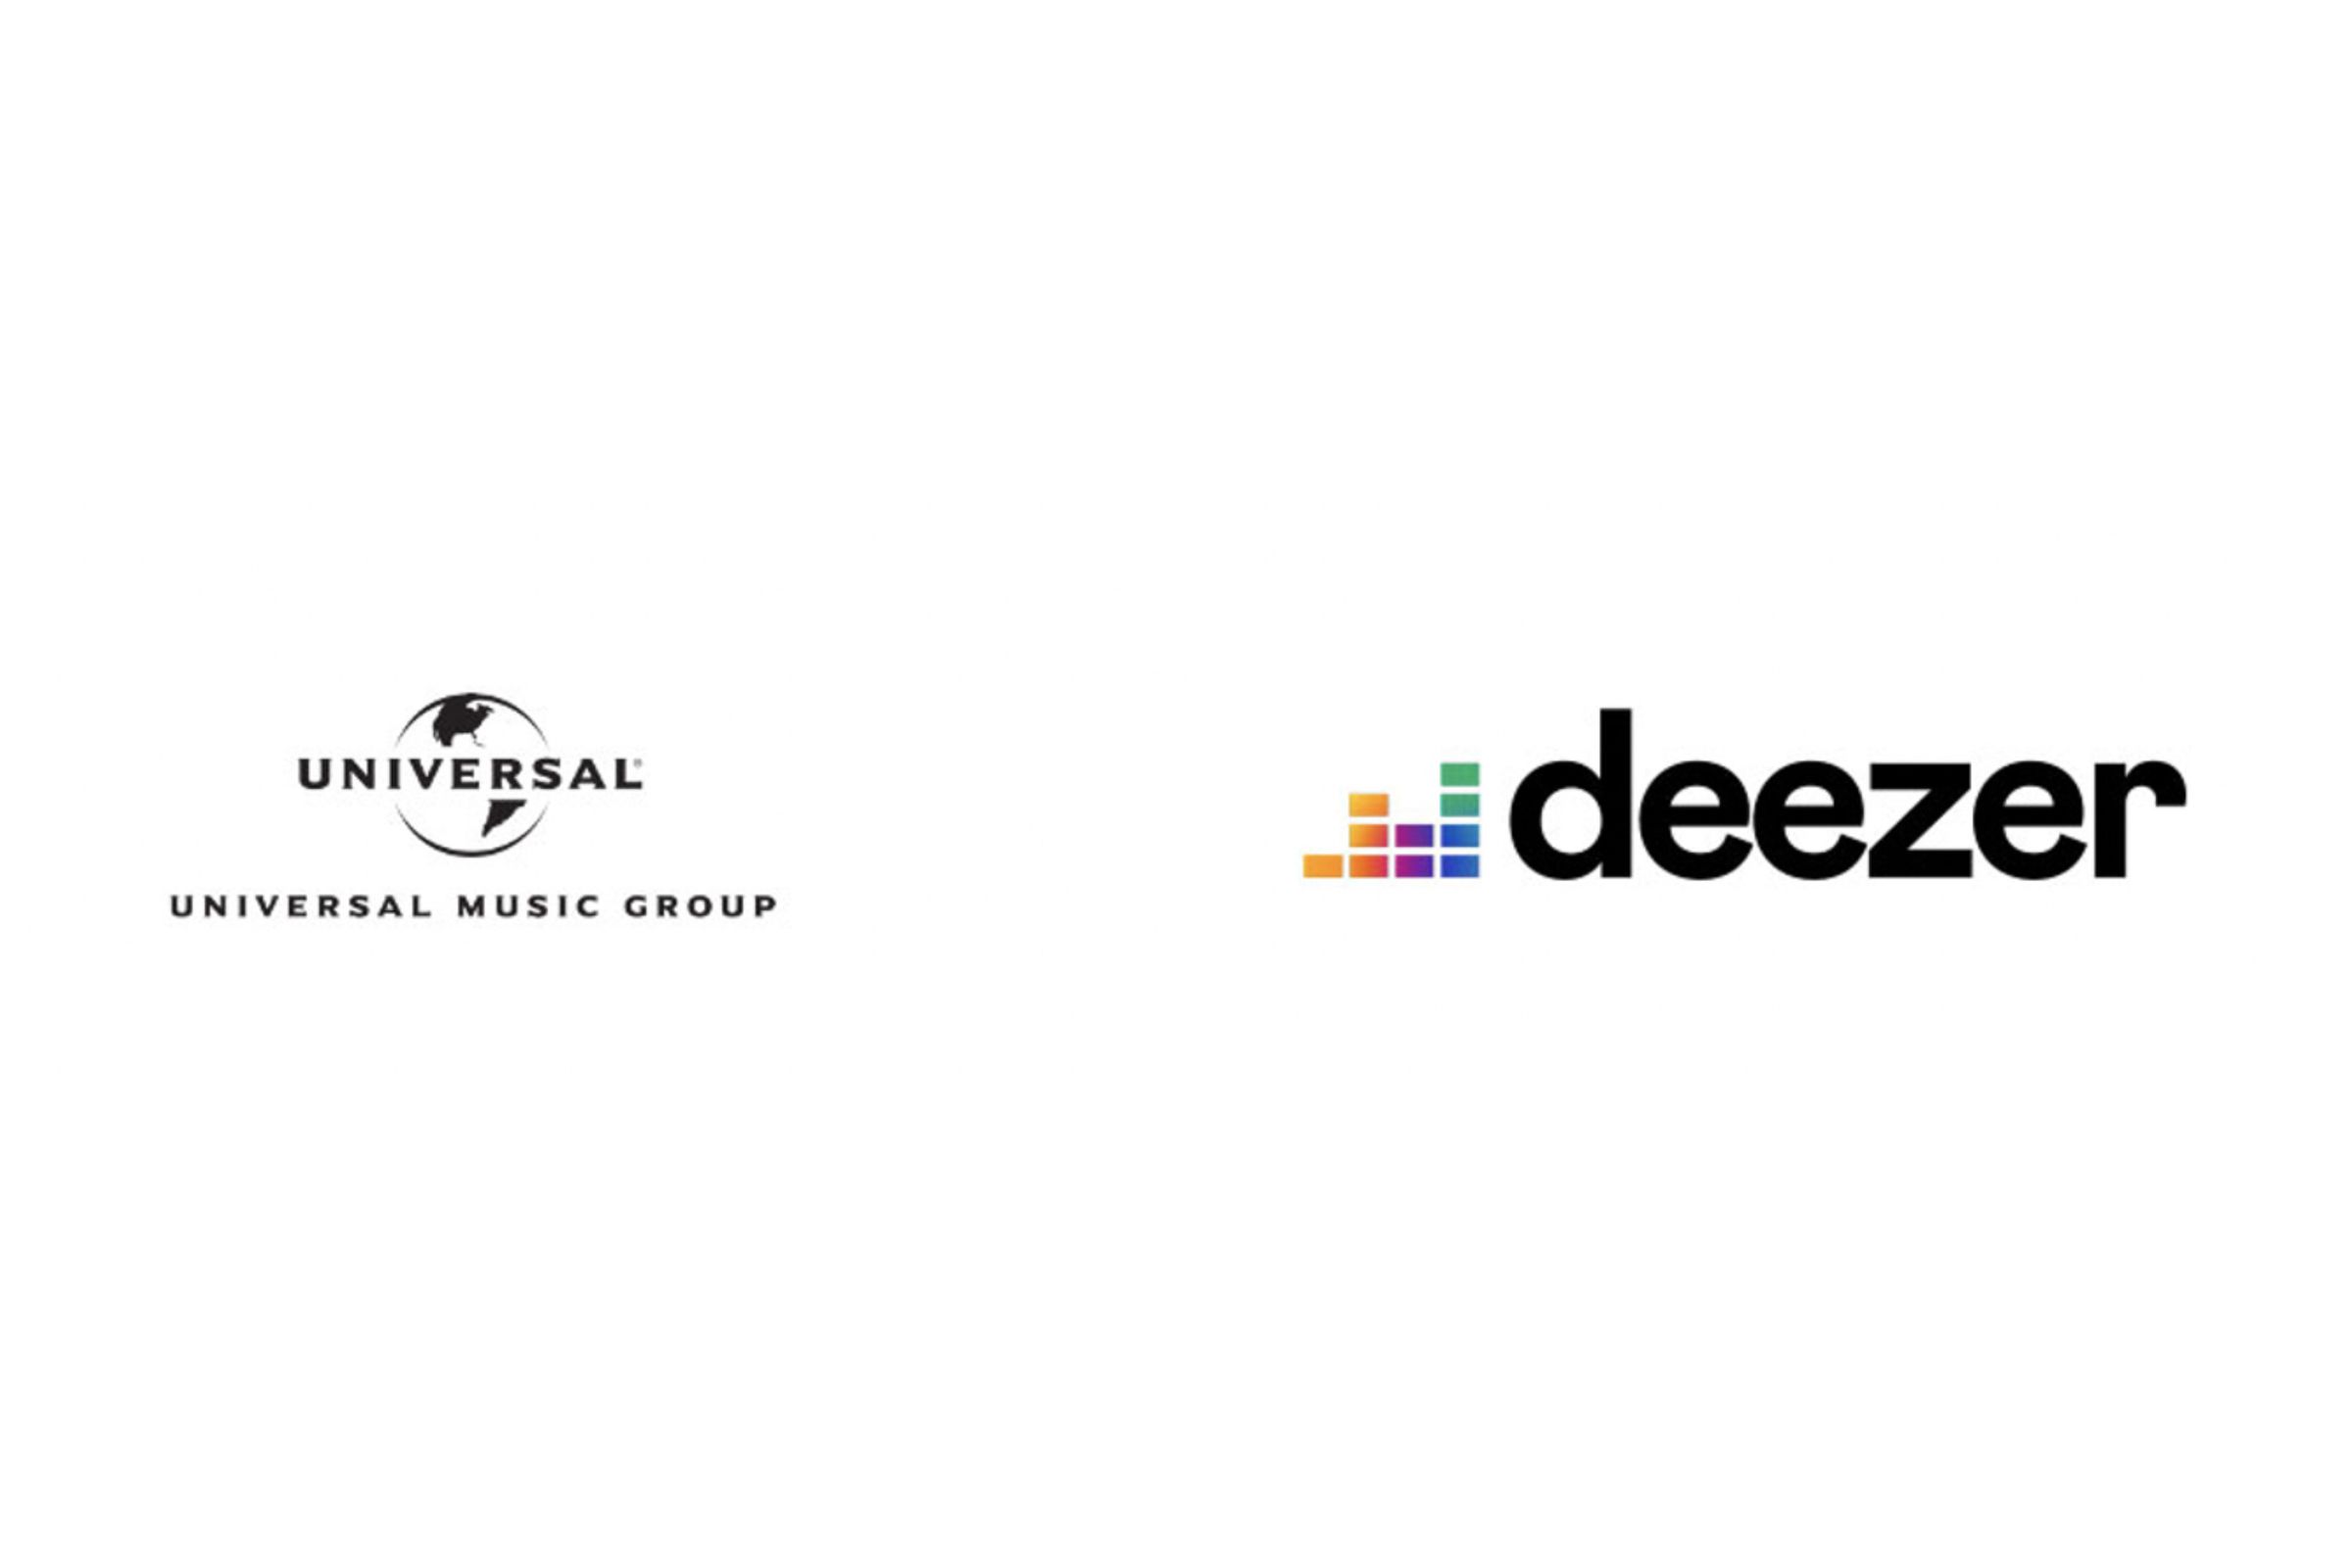 Universal Music Group and Deezer logos